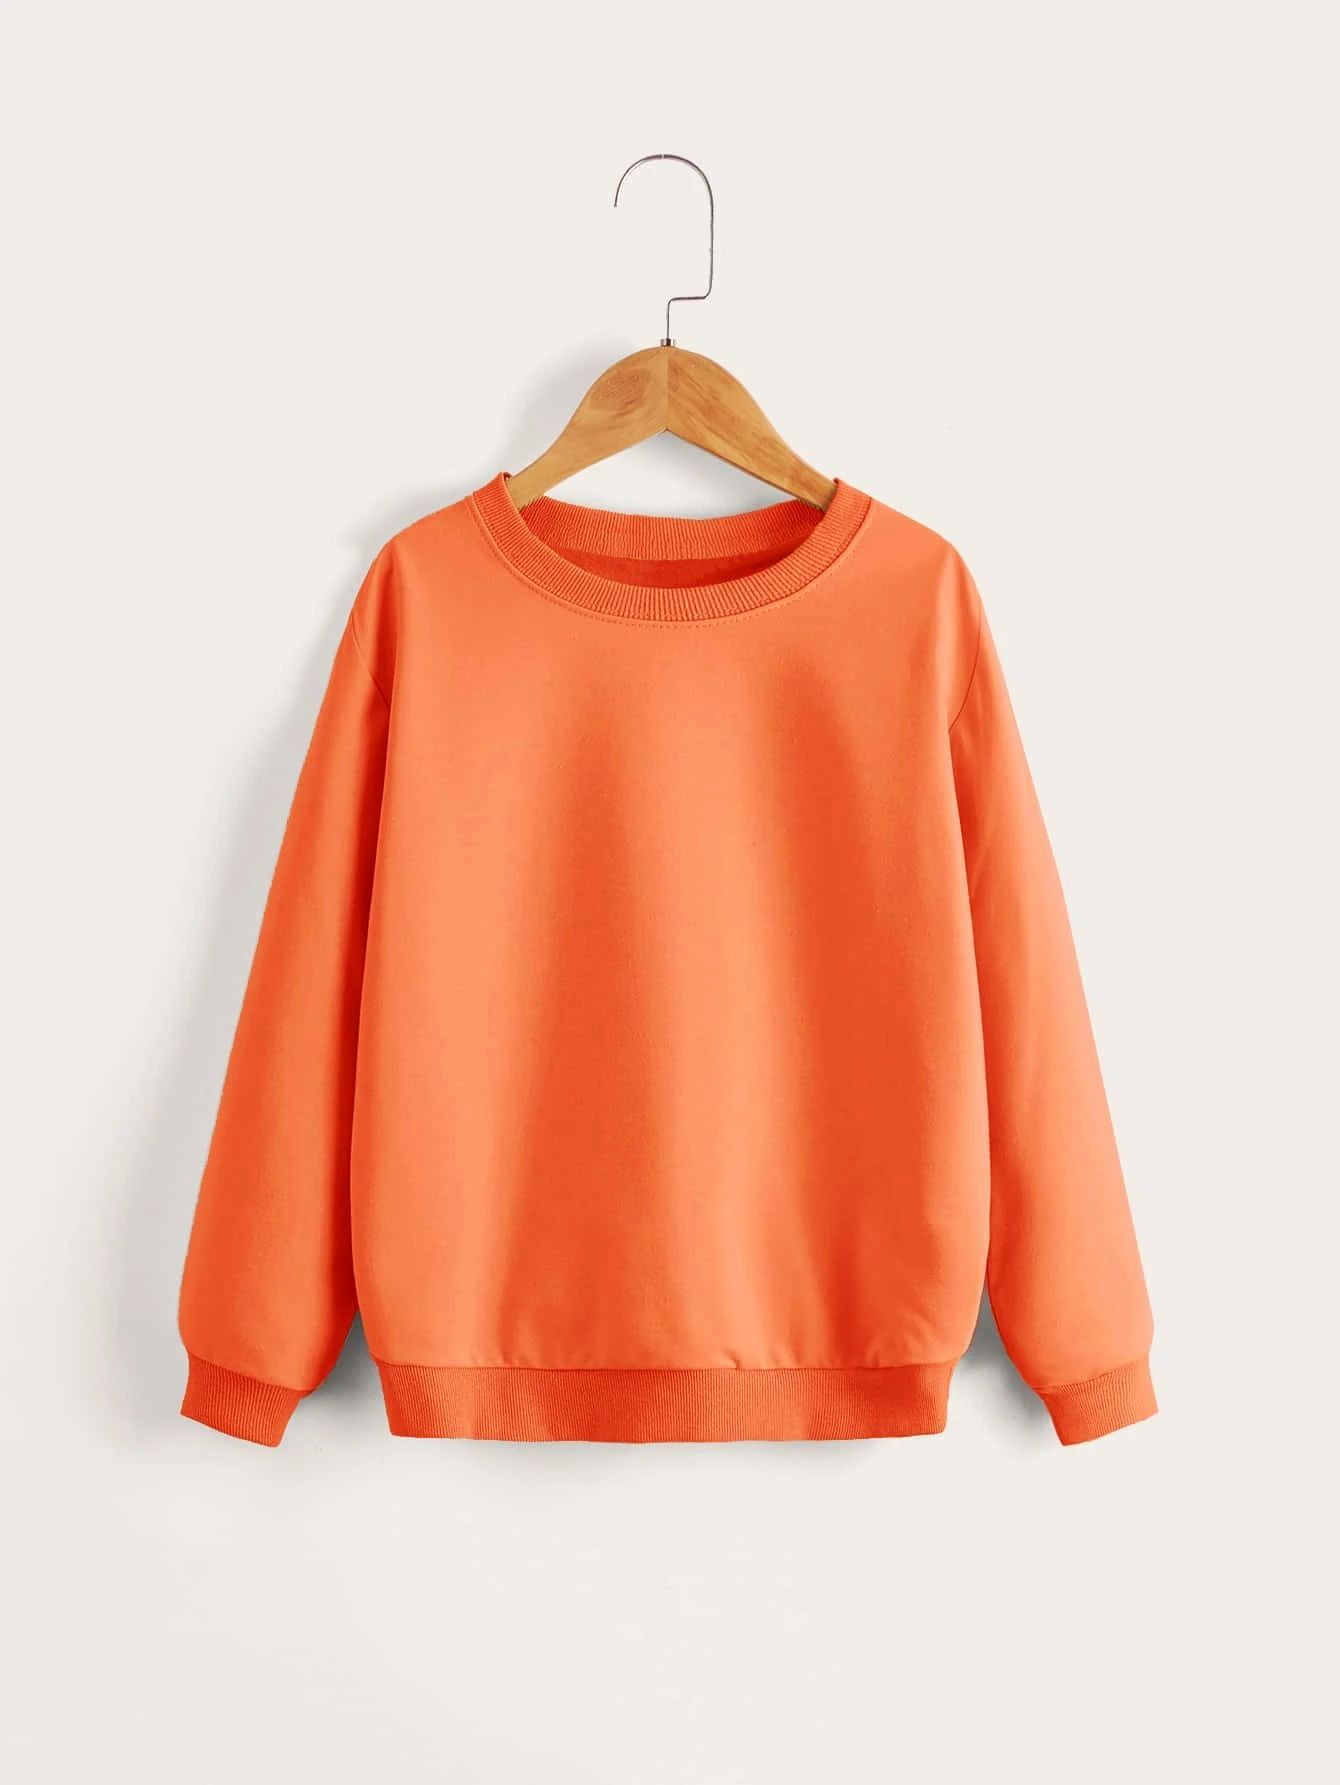 Brand New Joblot of 10 Pack Unisex Children Plain Orange Sweatshirts (3y-13y)